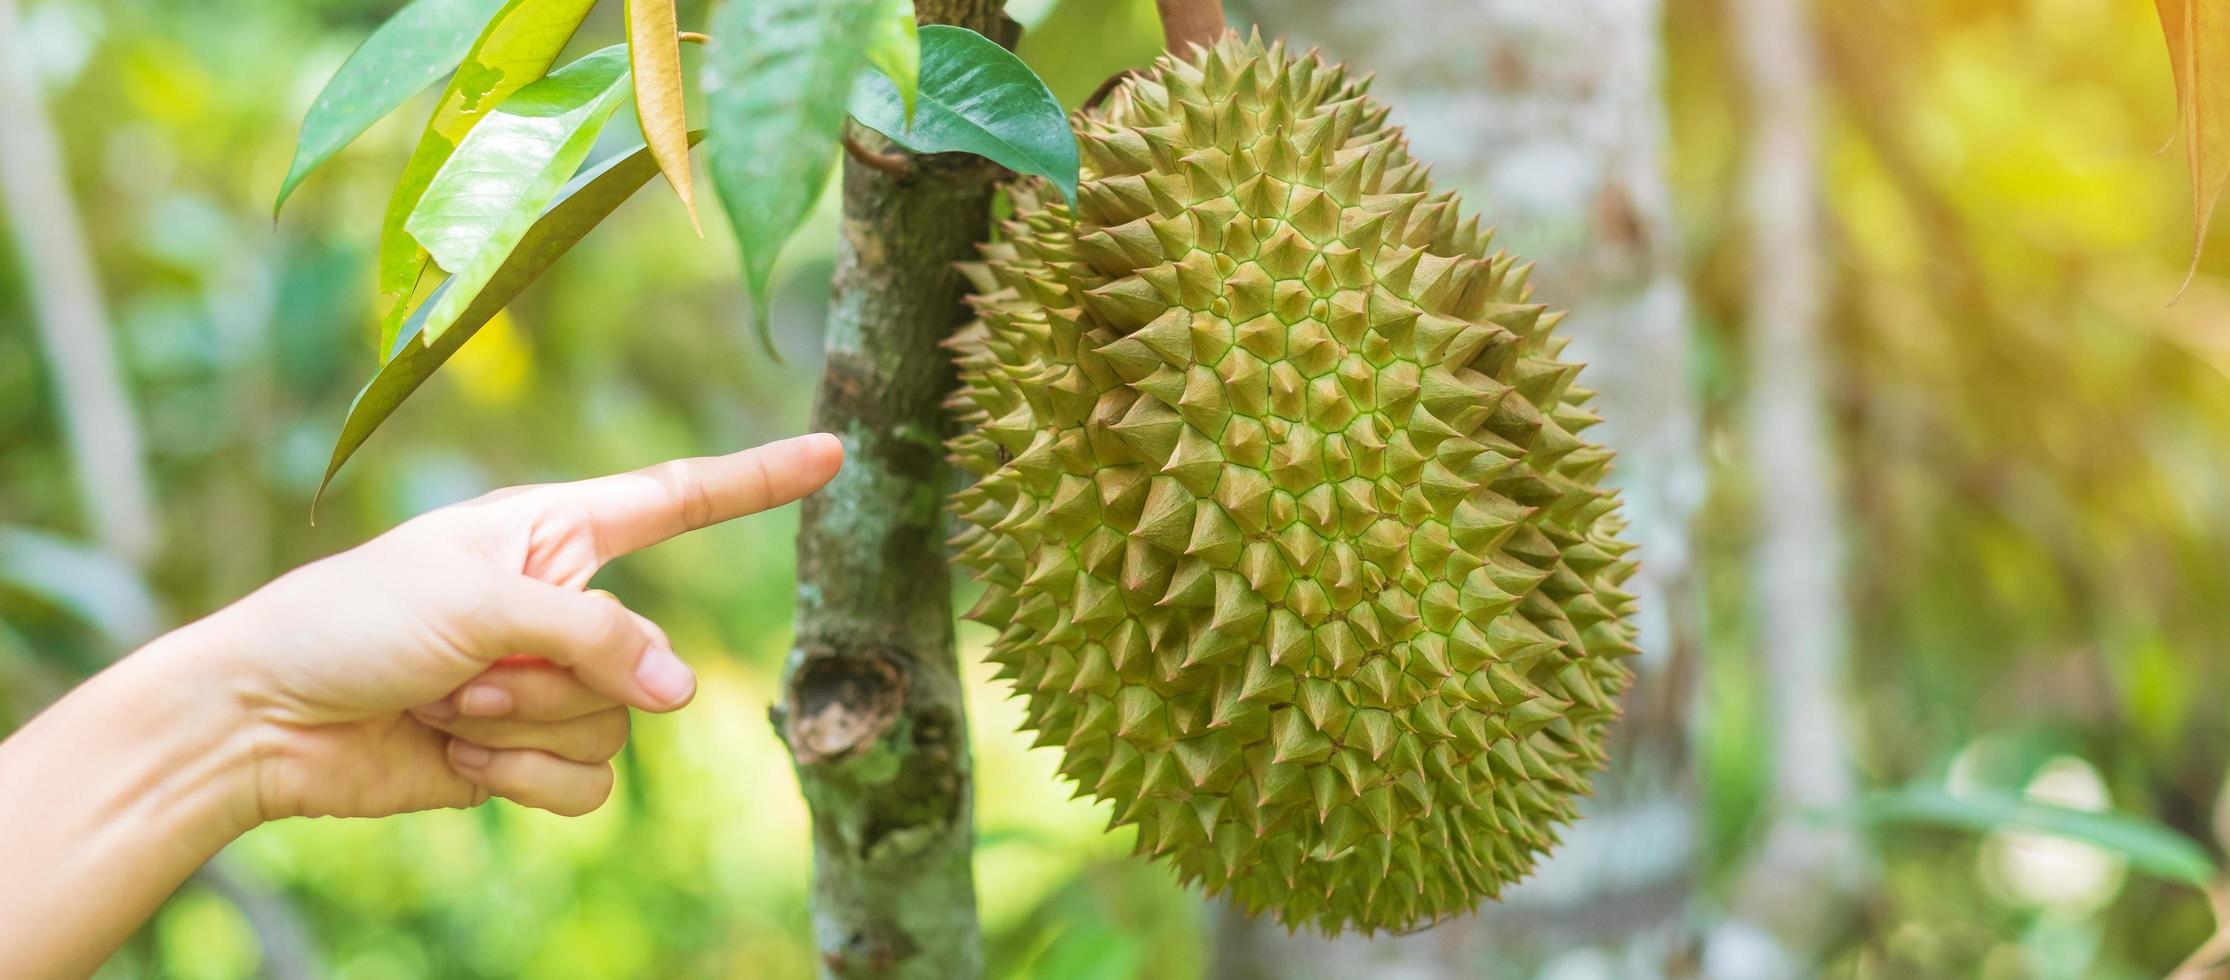 färsk durian hängande på träd i trädgårdsbakgrund, kung av frukt thailand. berömd sydostmat och asiatisk exotisk tropisk fruktkoncept foto